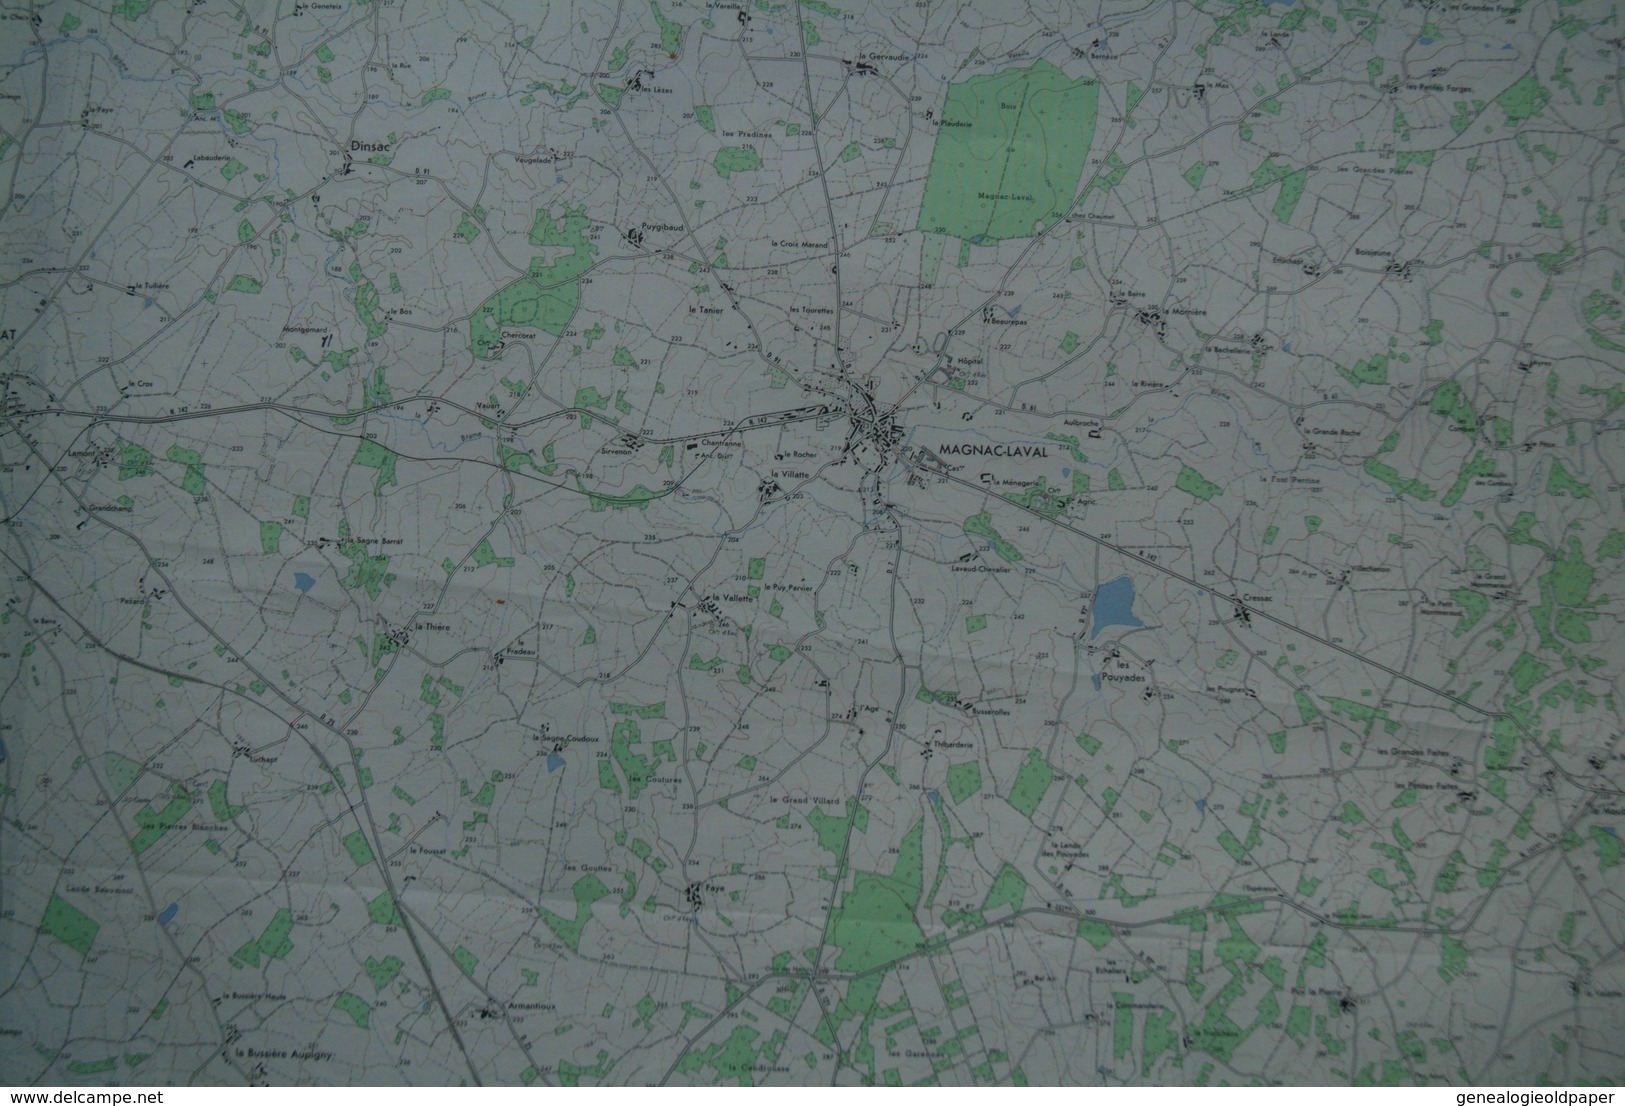 87 - MAGNAC LAVAL- PLAN TOPOGRAPHIQUE 1965- LE DORAT-DOMPIERRE LES EGLISES-DINSAC- N° 1-2- ESCURAT- RARE - Topographical Maps